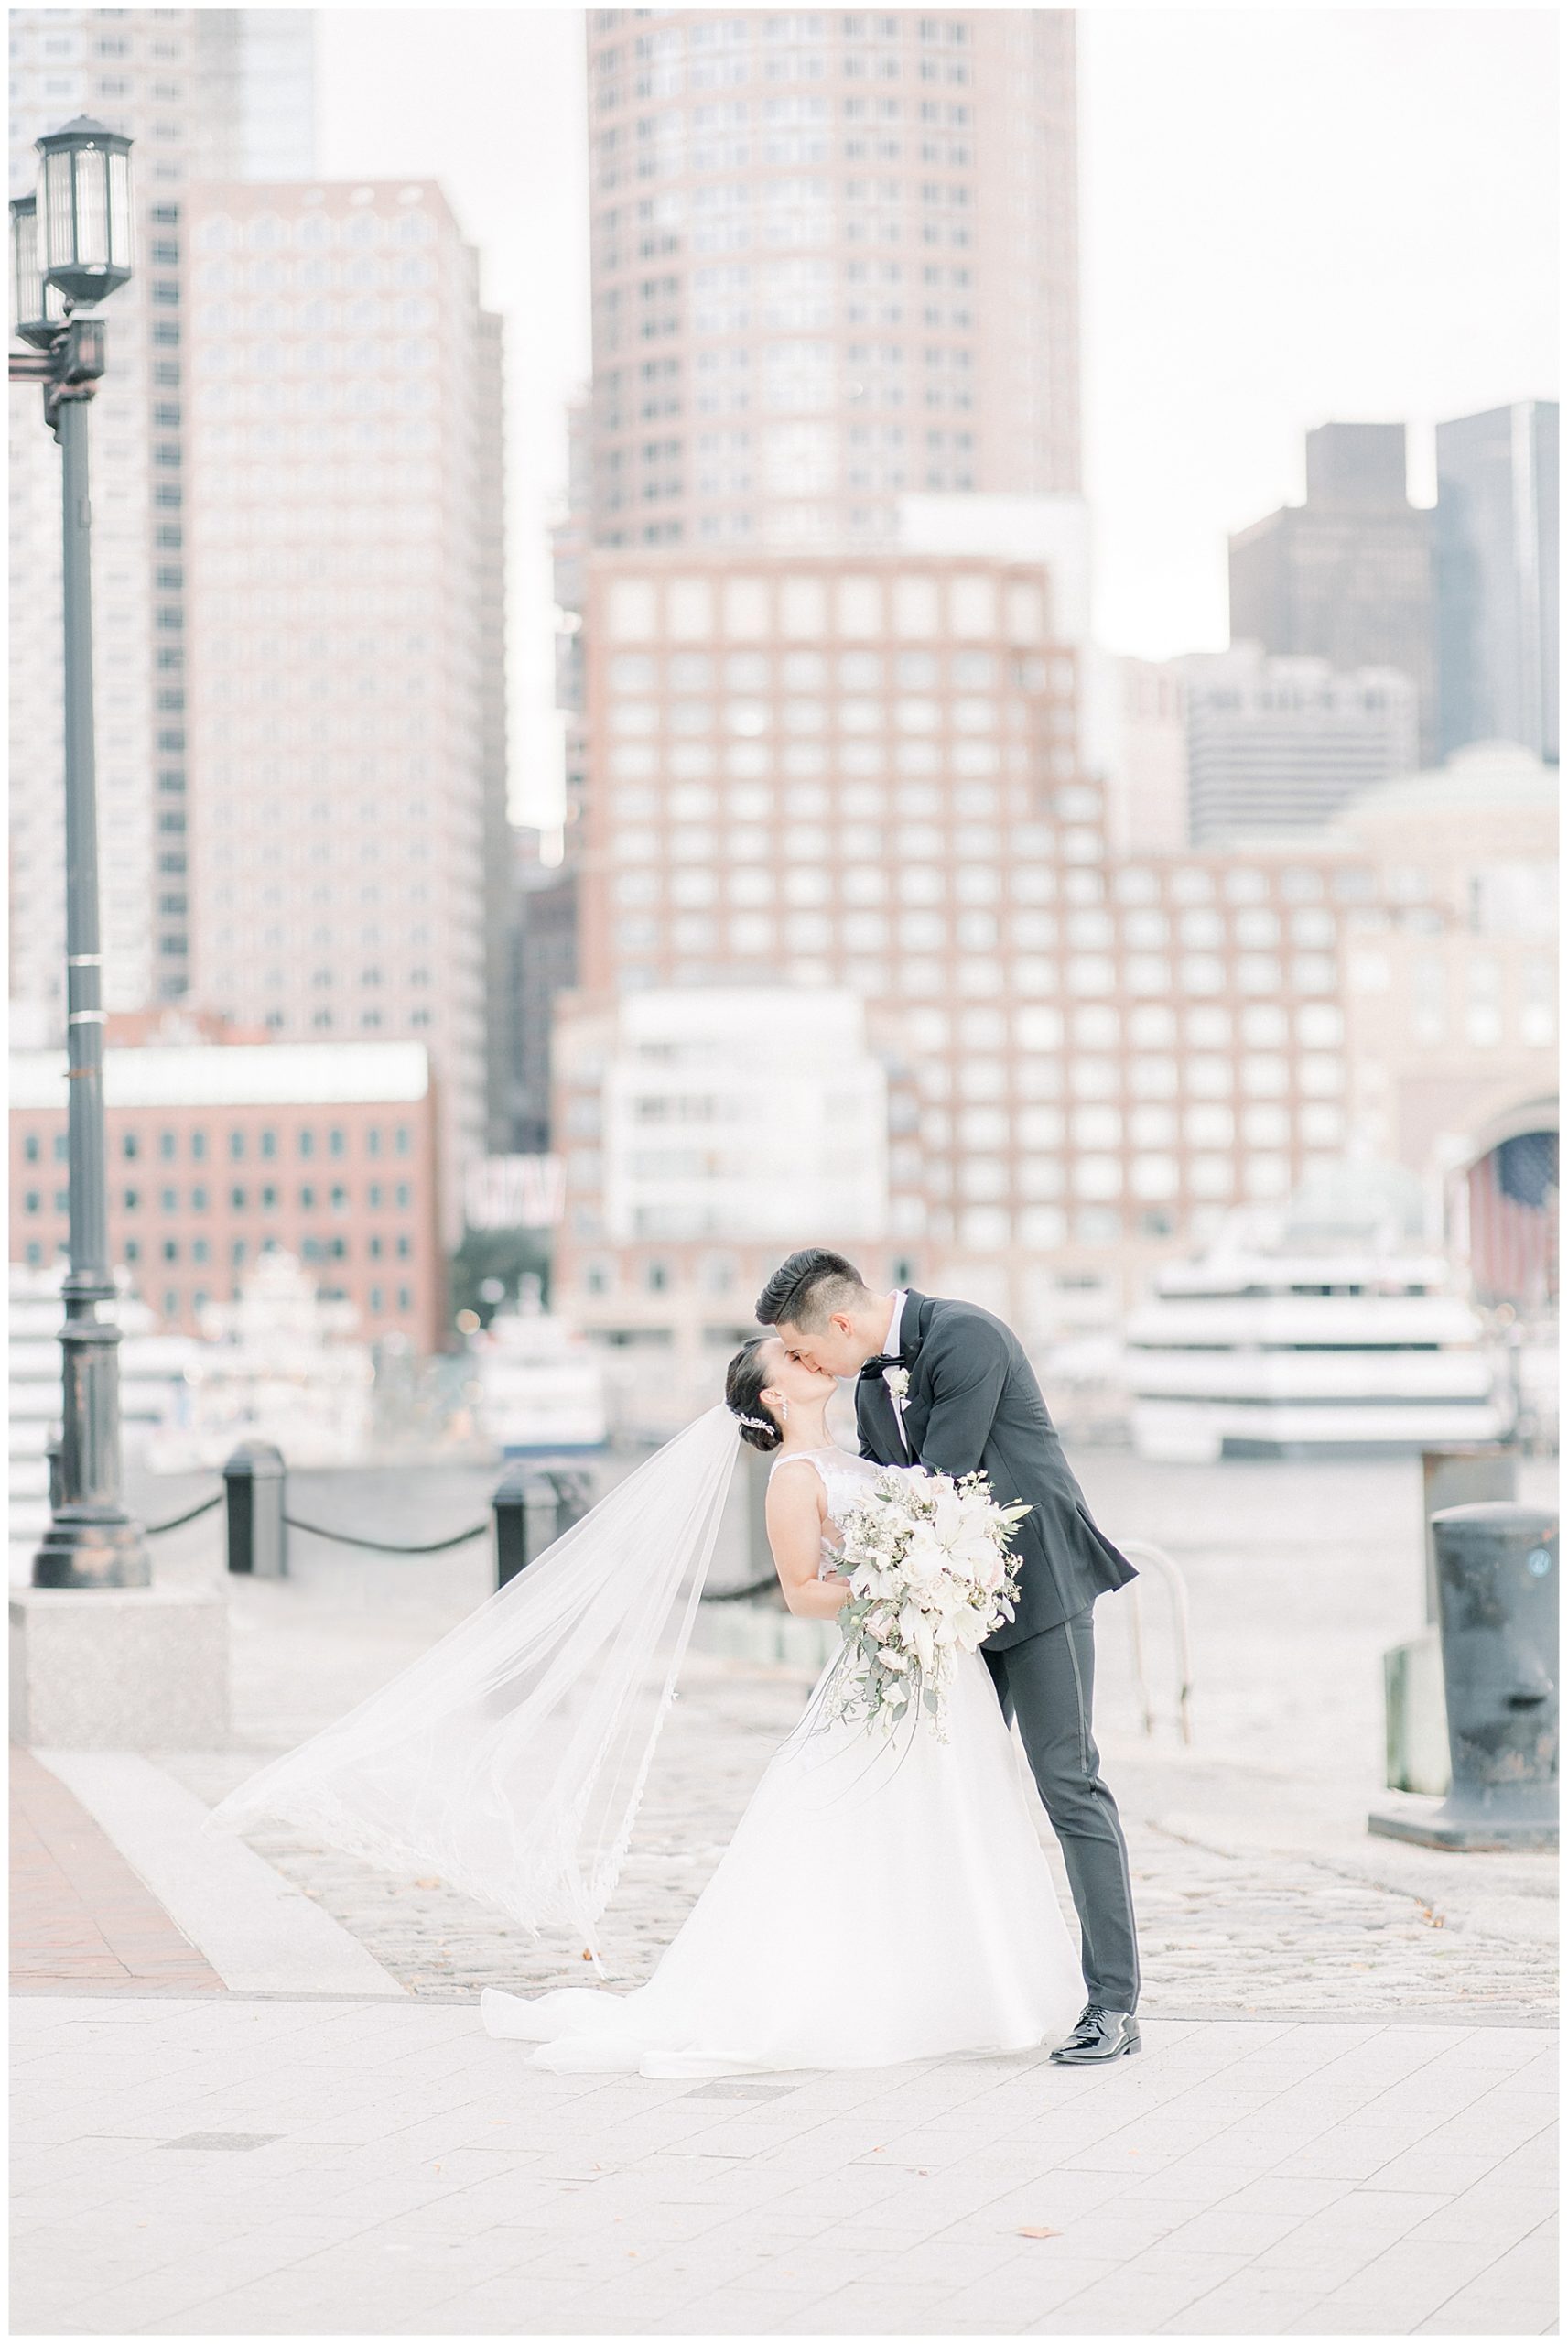 Boston newlyweds kiss